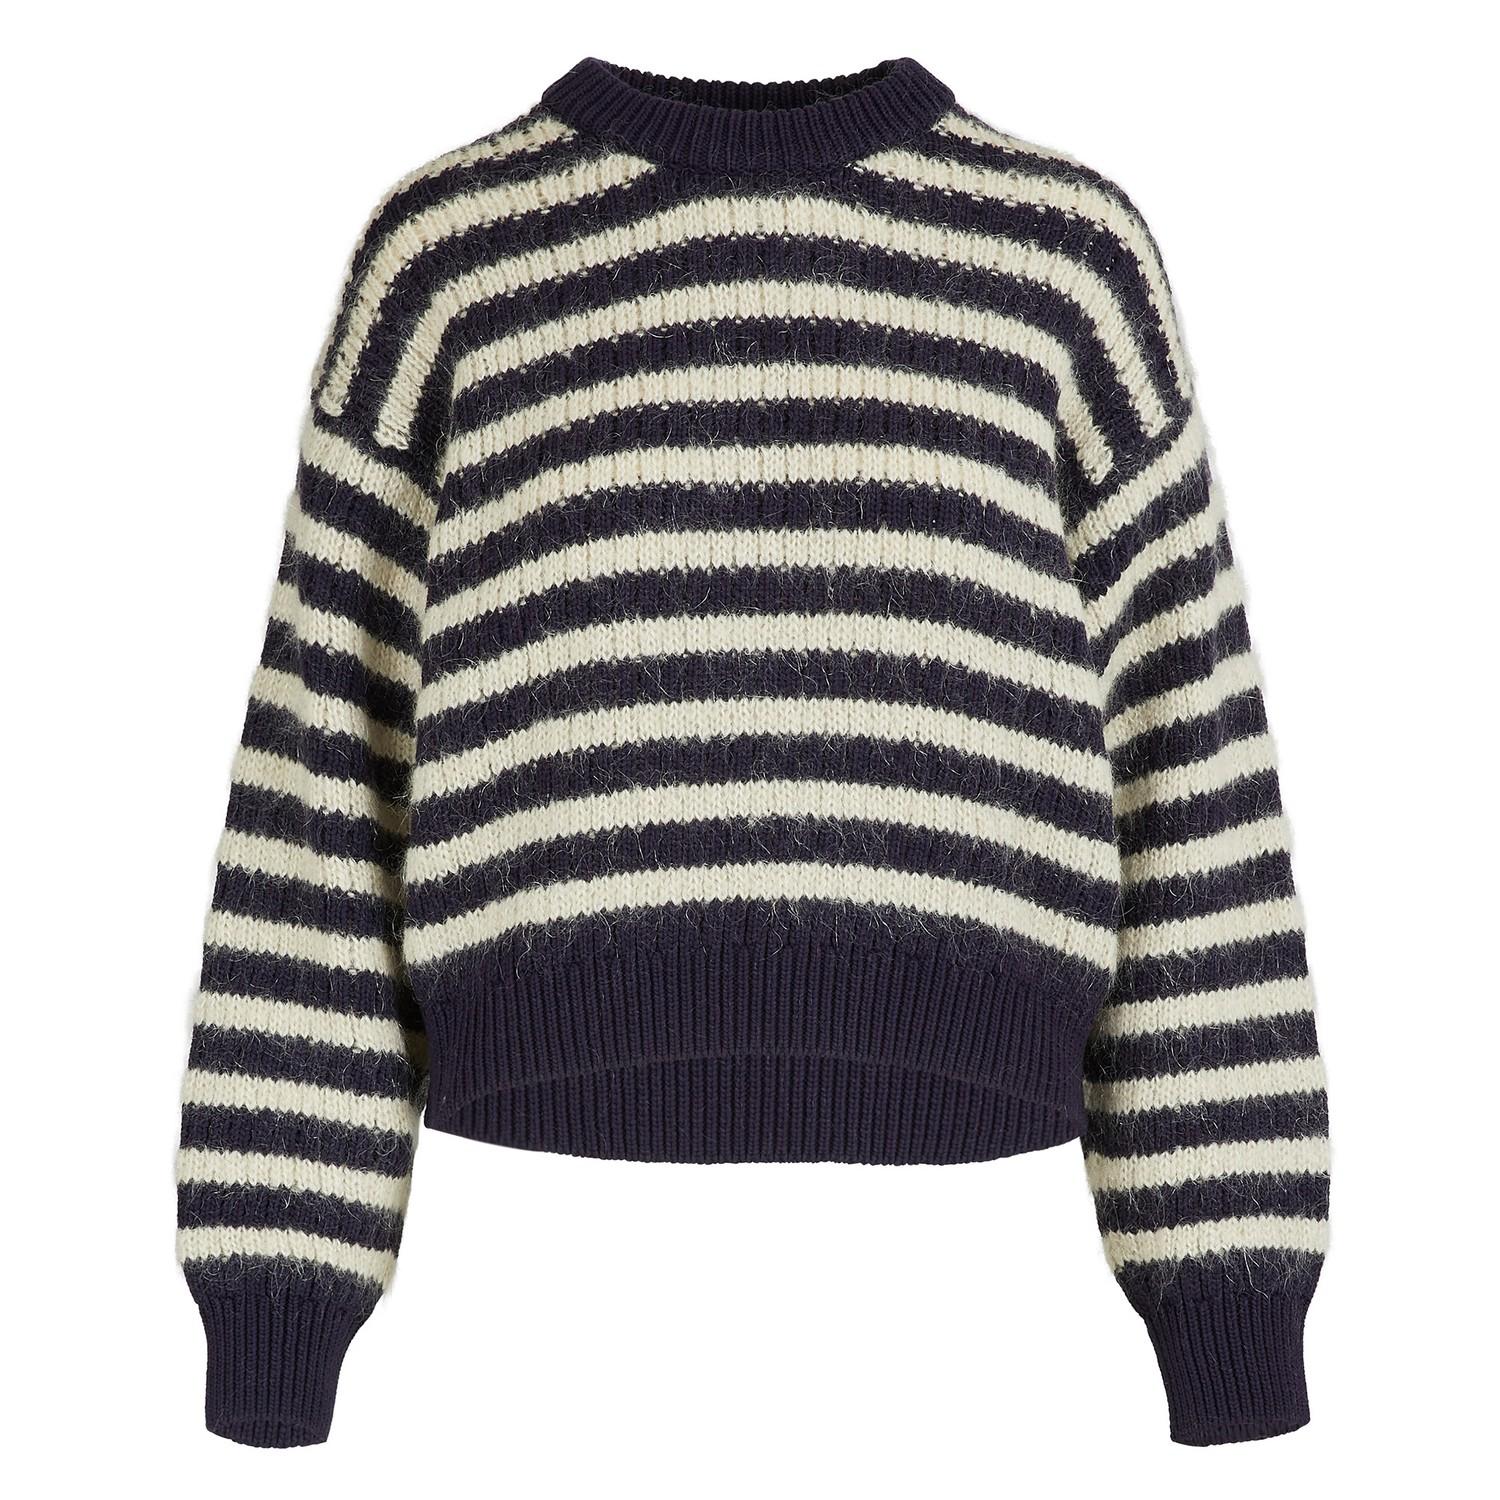 Acne Studios Oversized Striped Sweater in Navy/Beige (Blue) - Lyst